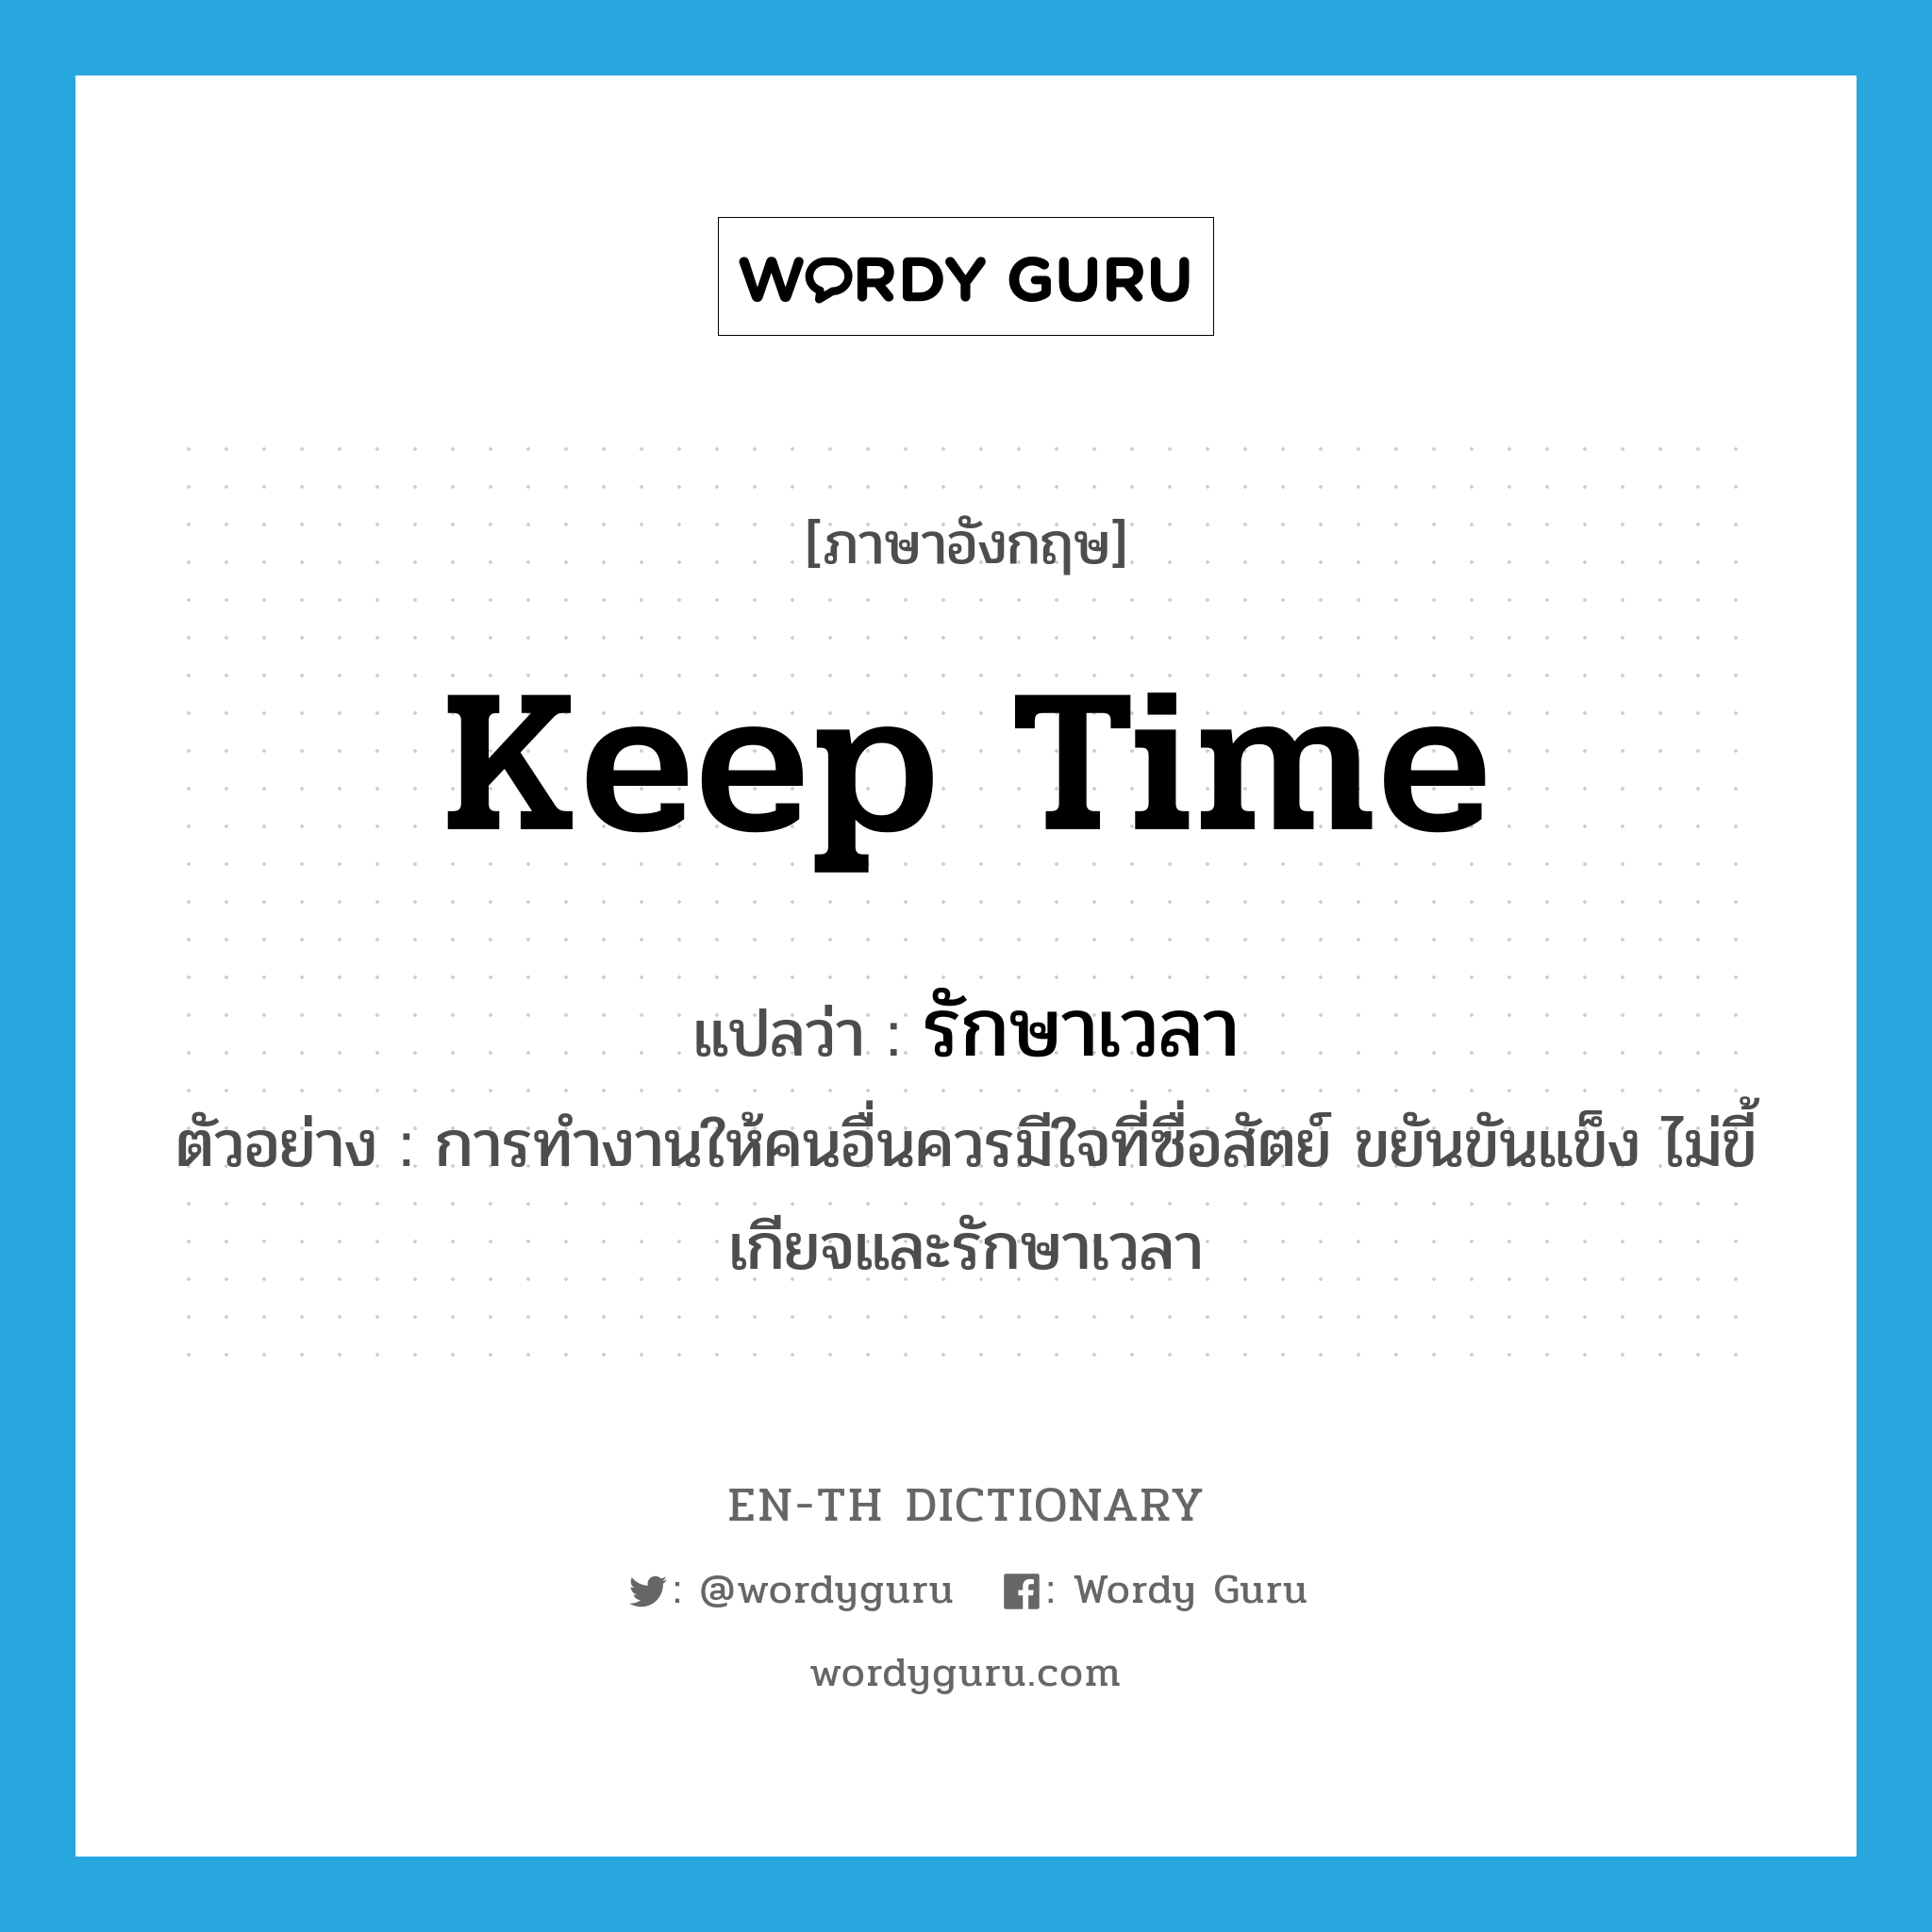 keep time แปลว่า?, คำศัพท์ภาษาอังกฤษ keep time แปลว่า รักษาเวลา ประเภท V ตัวอย่าง การทำงานให้คนอื่นควรมีใจที่ซื่อสัตย์ ขยันขันแข็ง ไม่ขี้เกียจและรักษาเวลา หมวด V